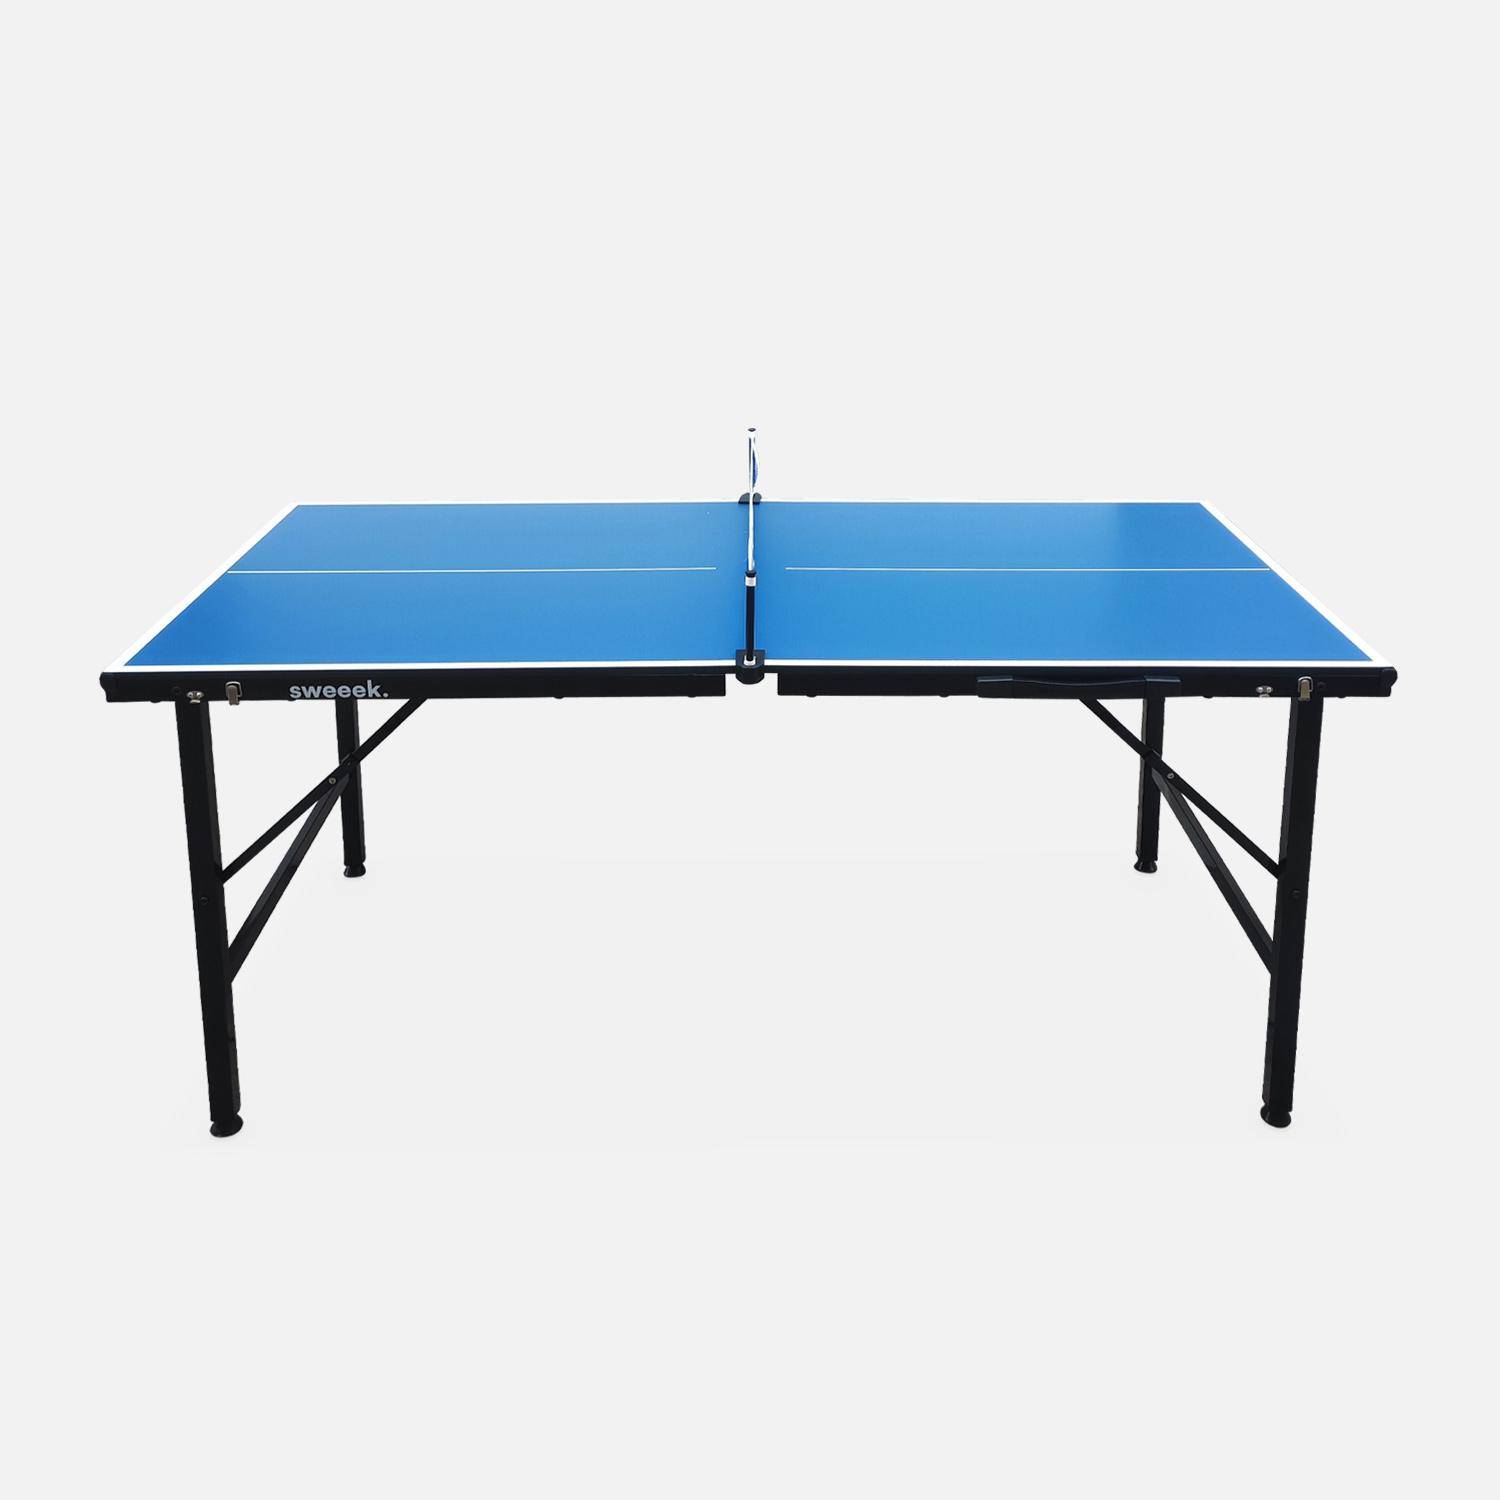 mit Ping blau, | sweeek INDOOR Zubehör 150x75cm klappbarer Mini-Tischtennisplatte Pong